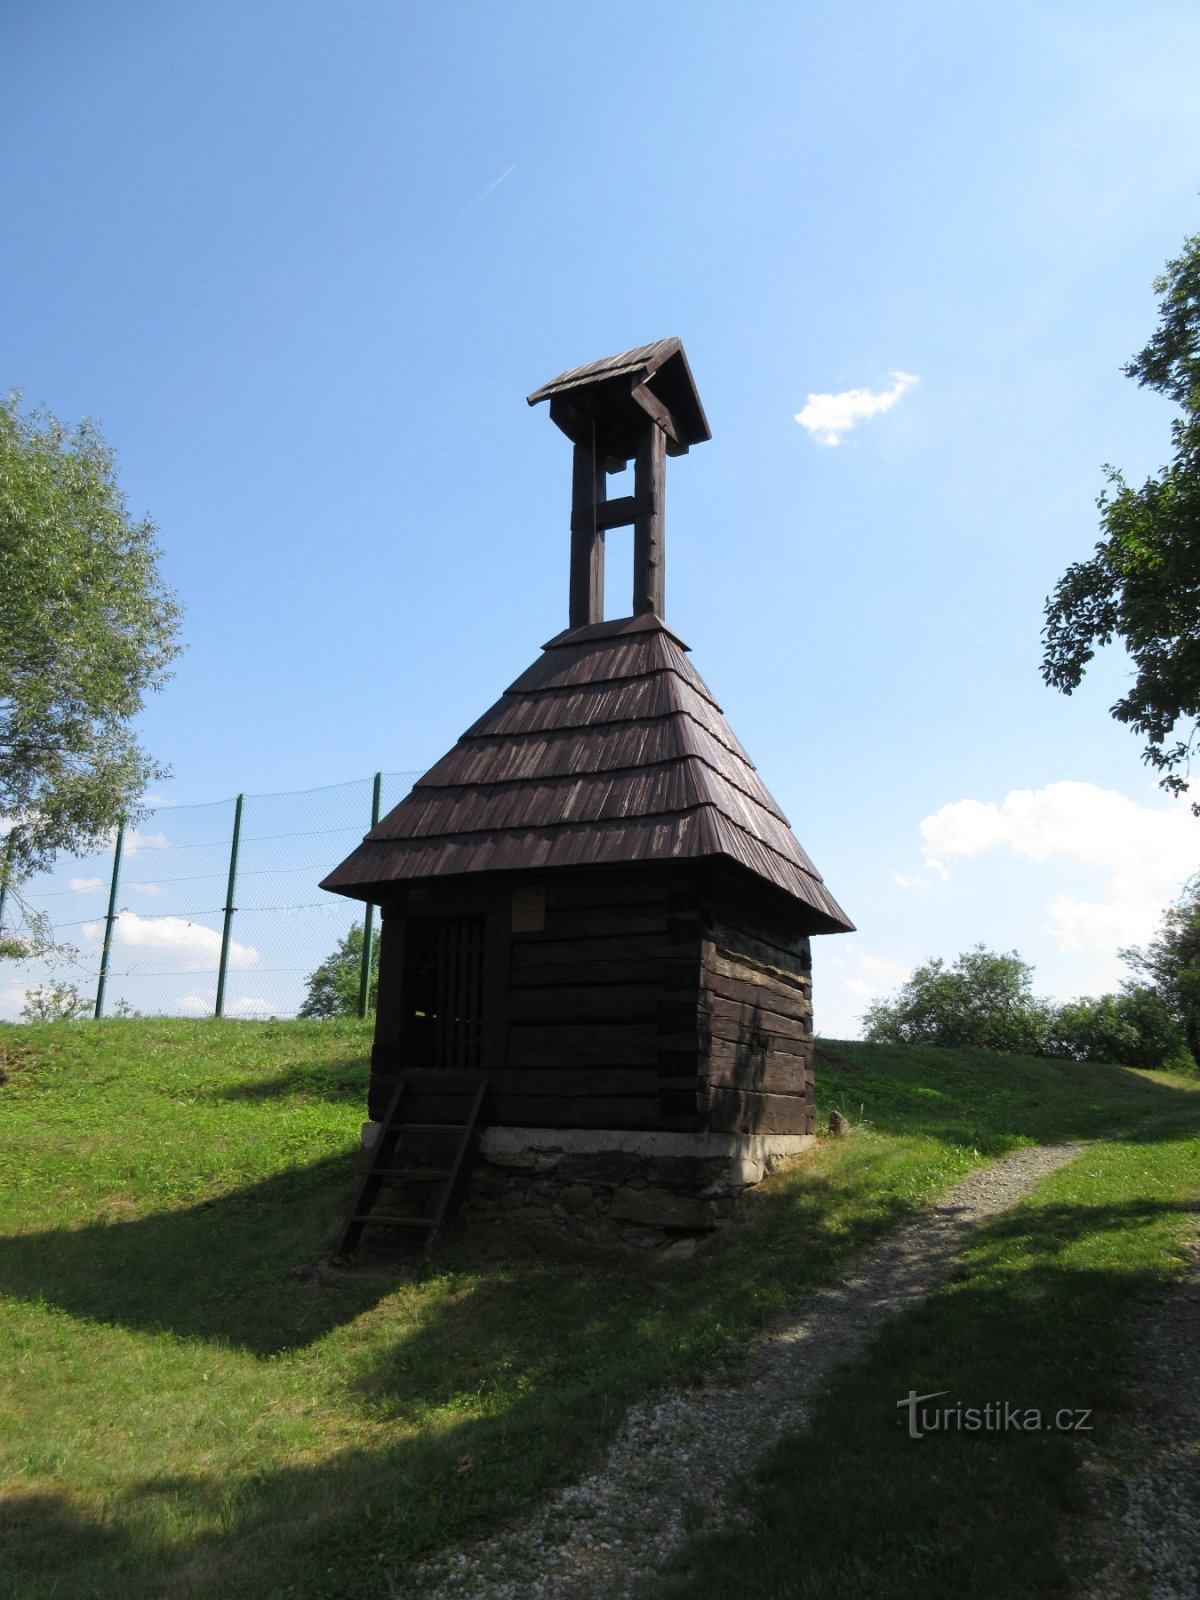 Borek - Kozojedy (Pilsen-Nord) und die dortigen Holzhäuser